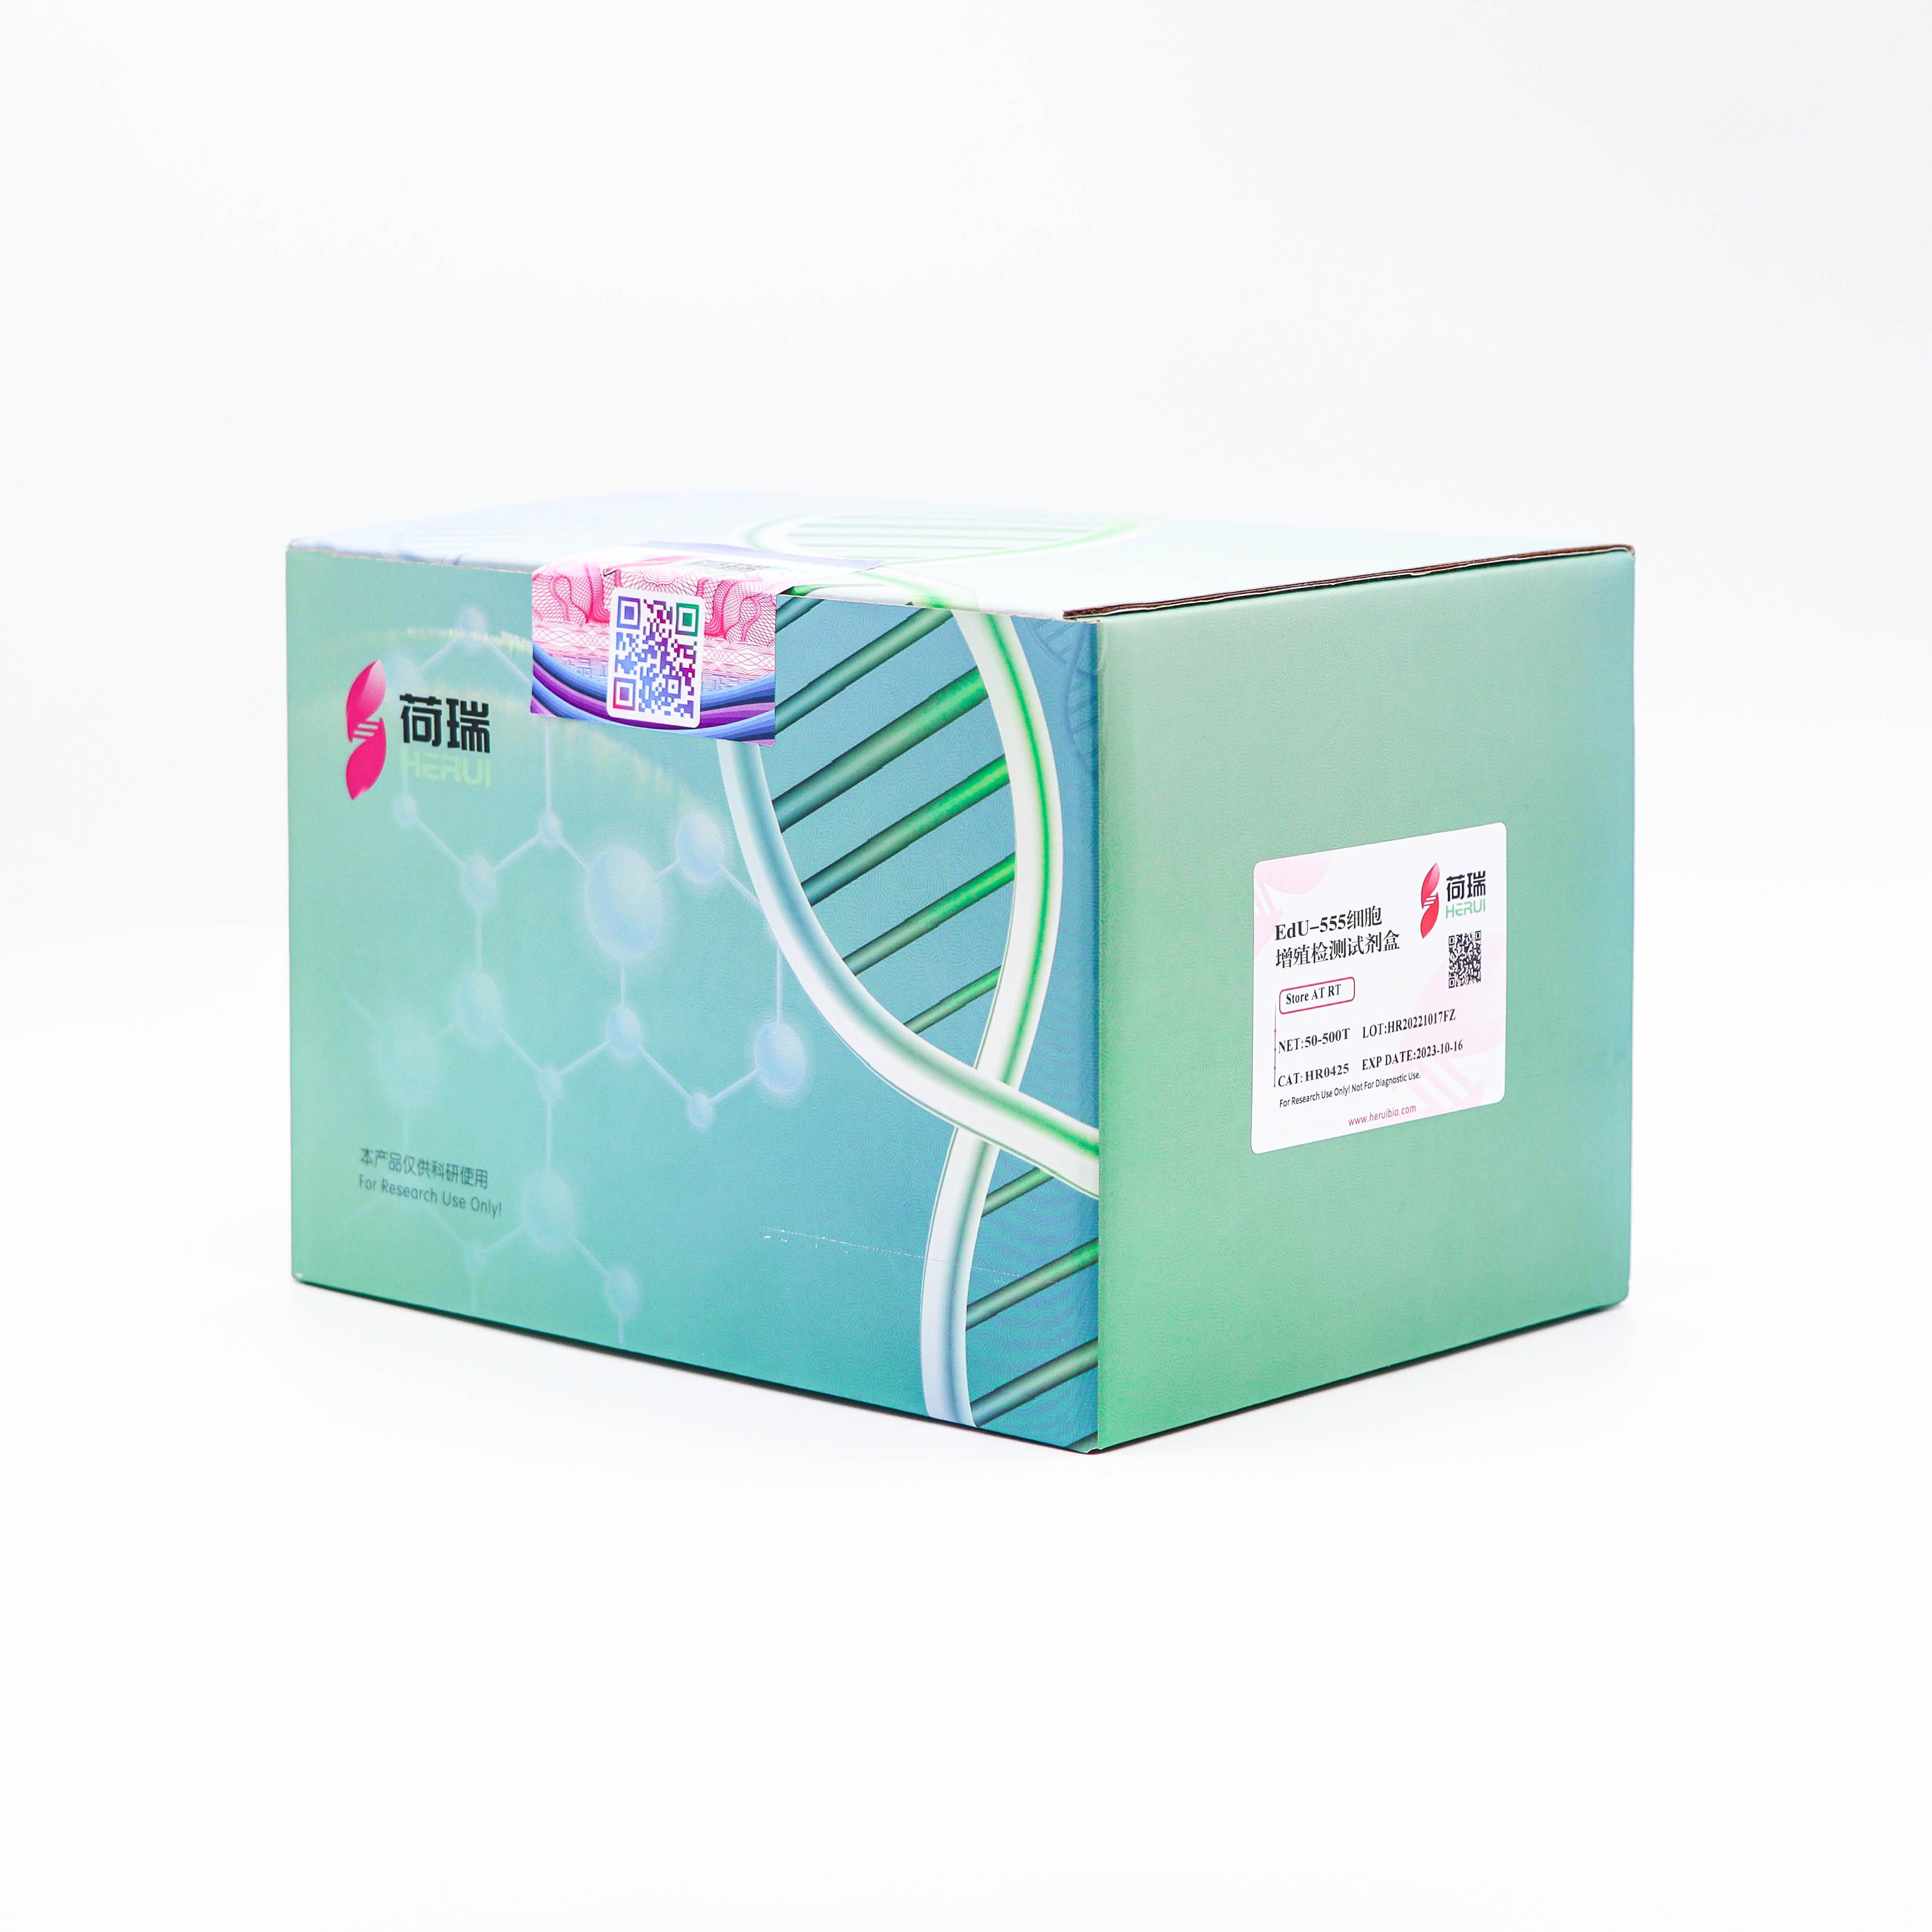 EdU-555细胞增殖检测试剂盒(适用于FACS、FM)